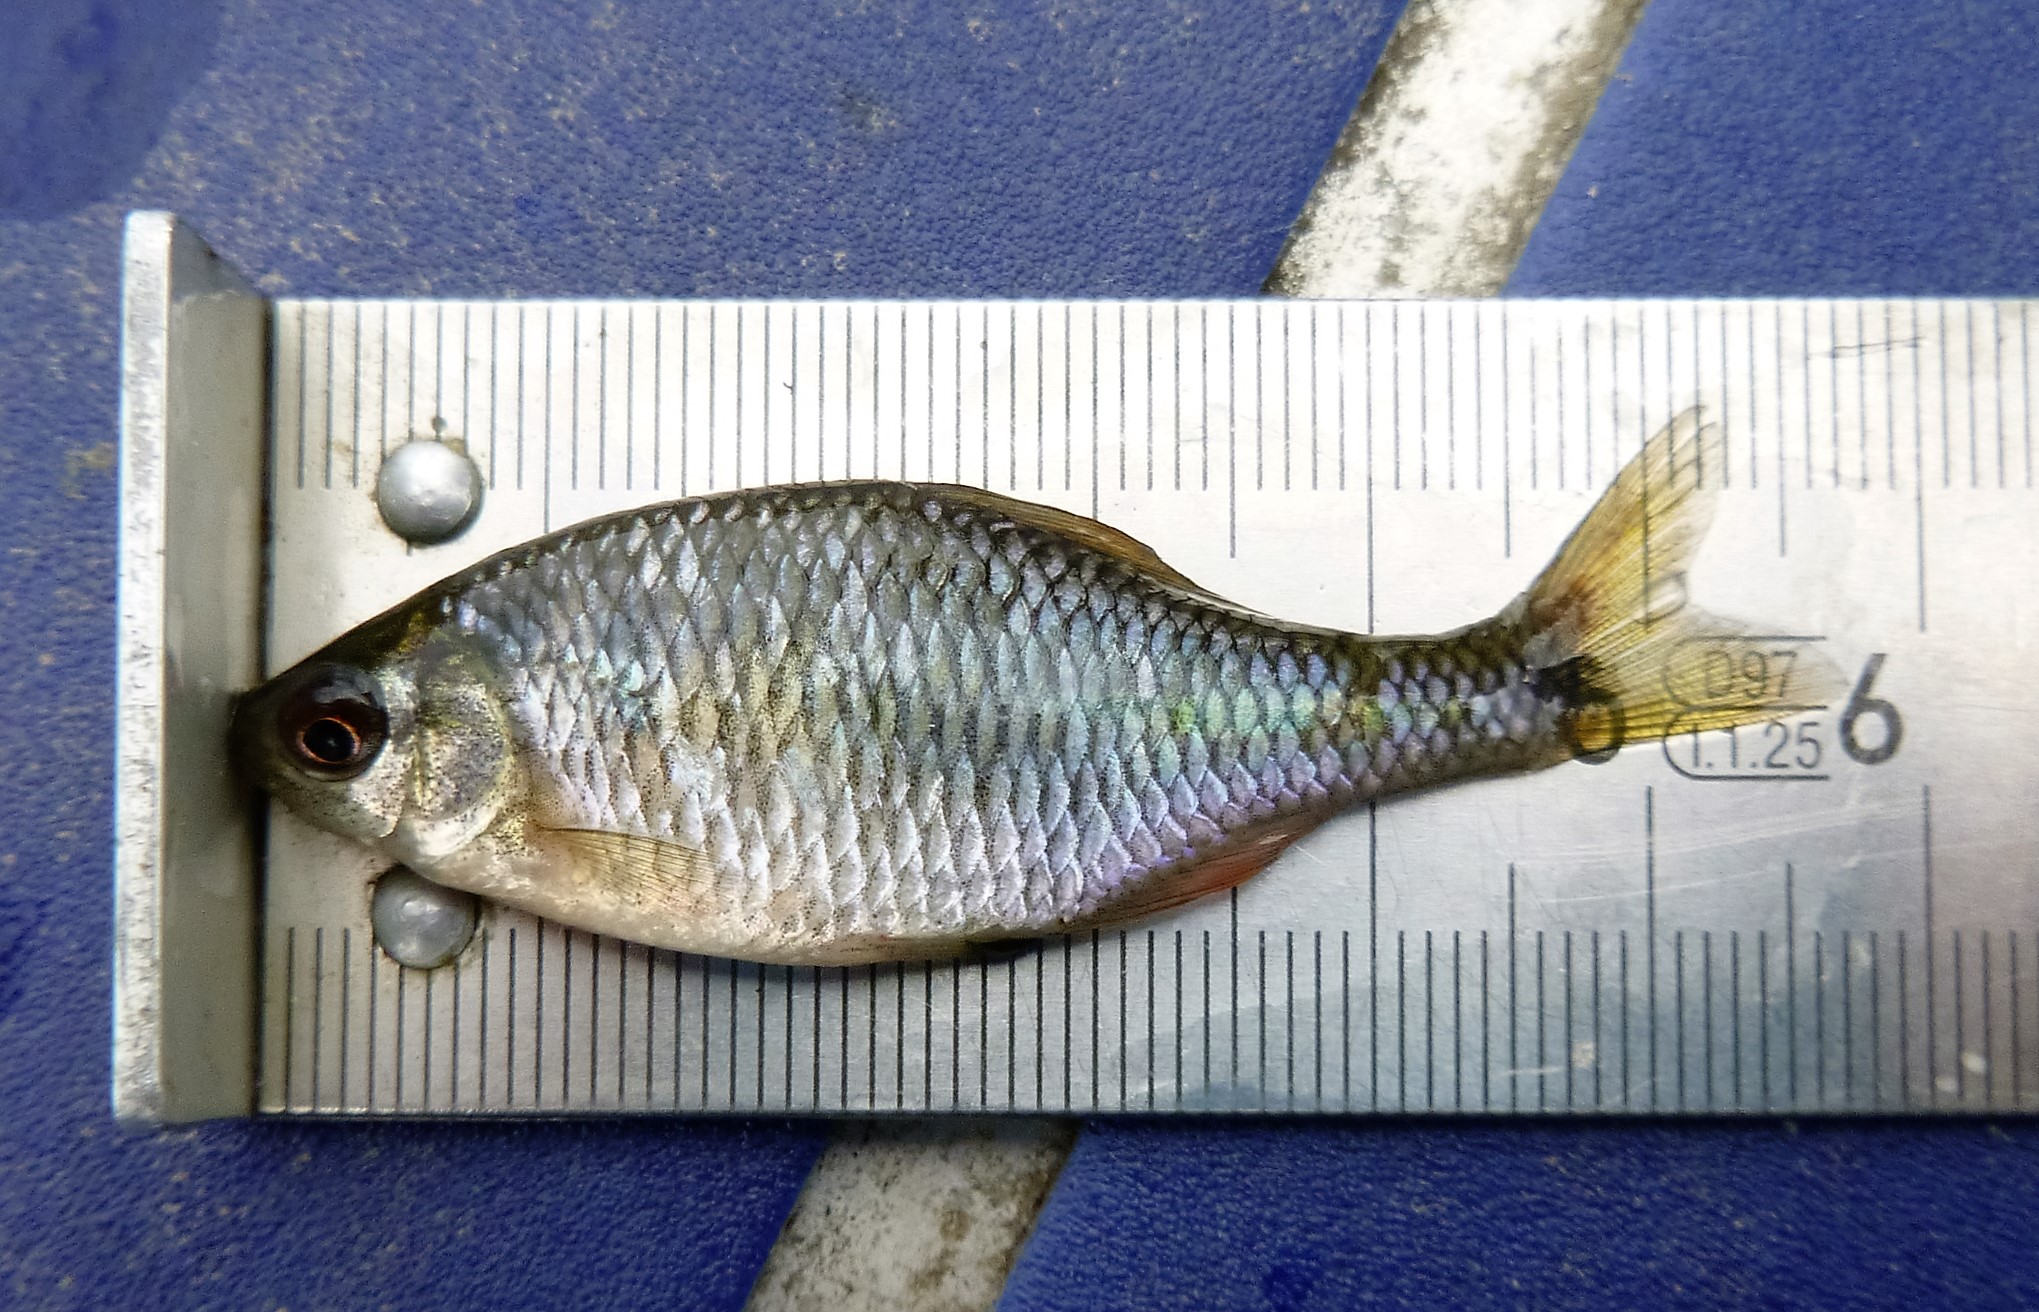 Ryba różanka długości około 6 centymetrów leżąca na miarce stalowej